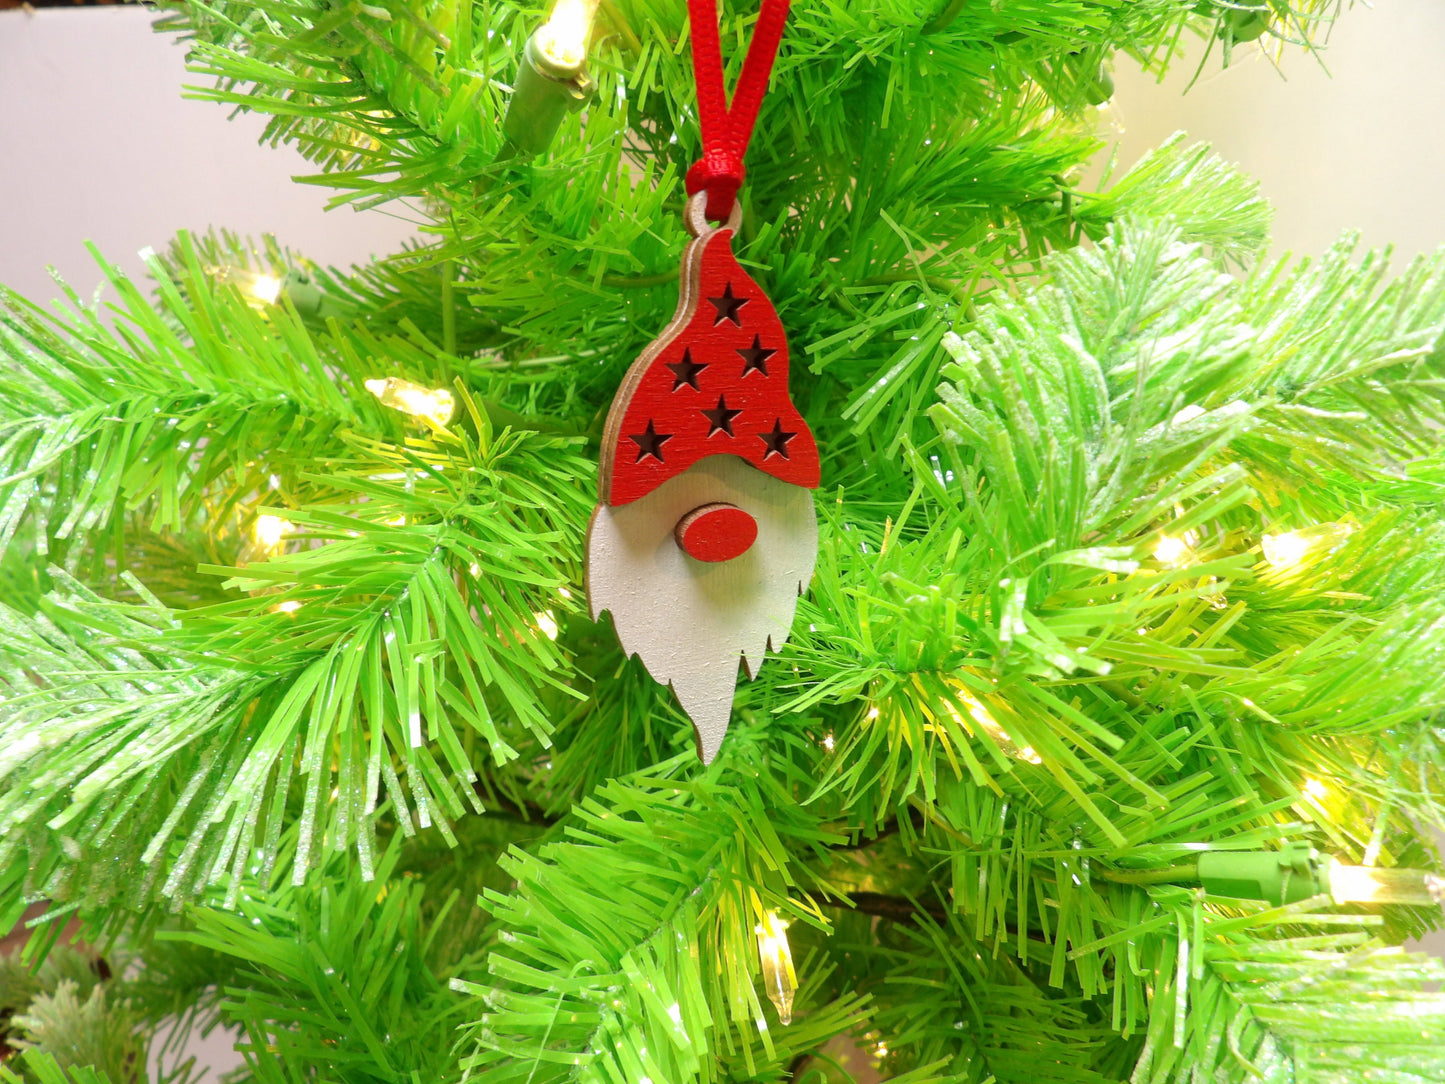 Red Star Gnome Ornament